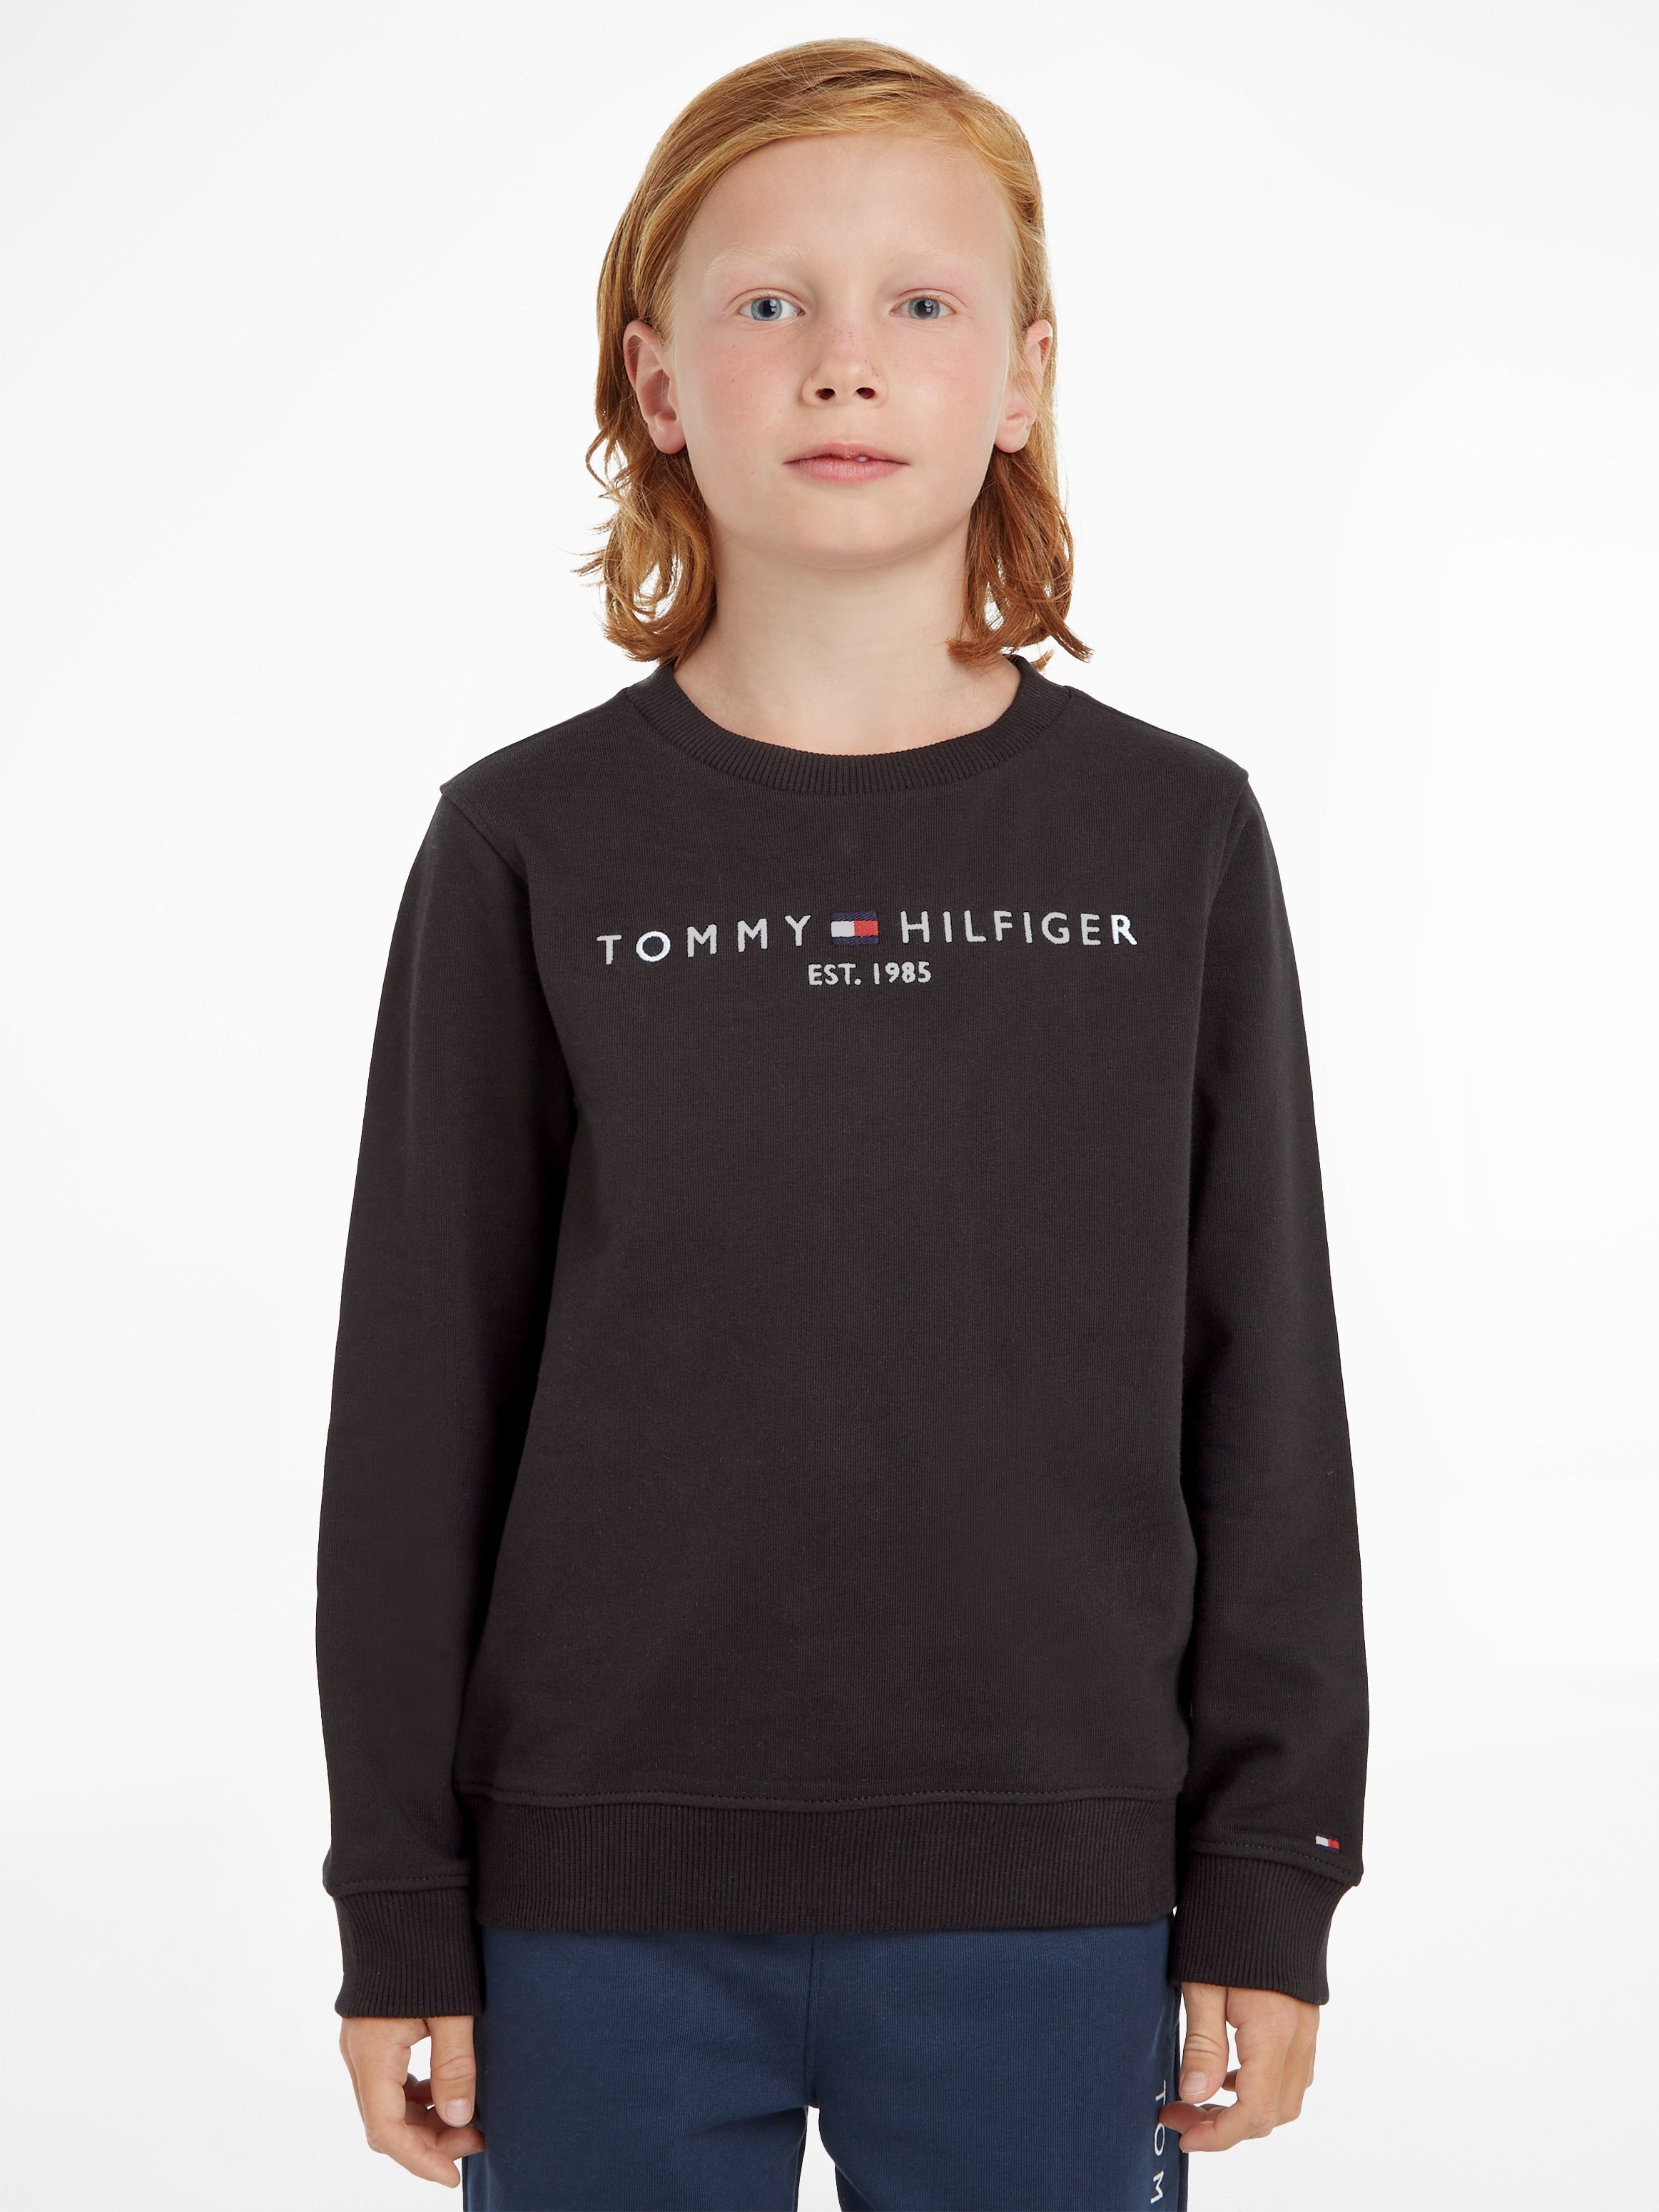 Tommy Hilfiger Sweatshirt OTTO Online Shop im